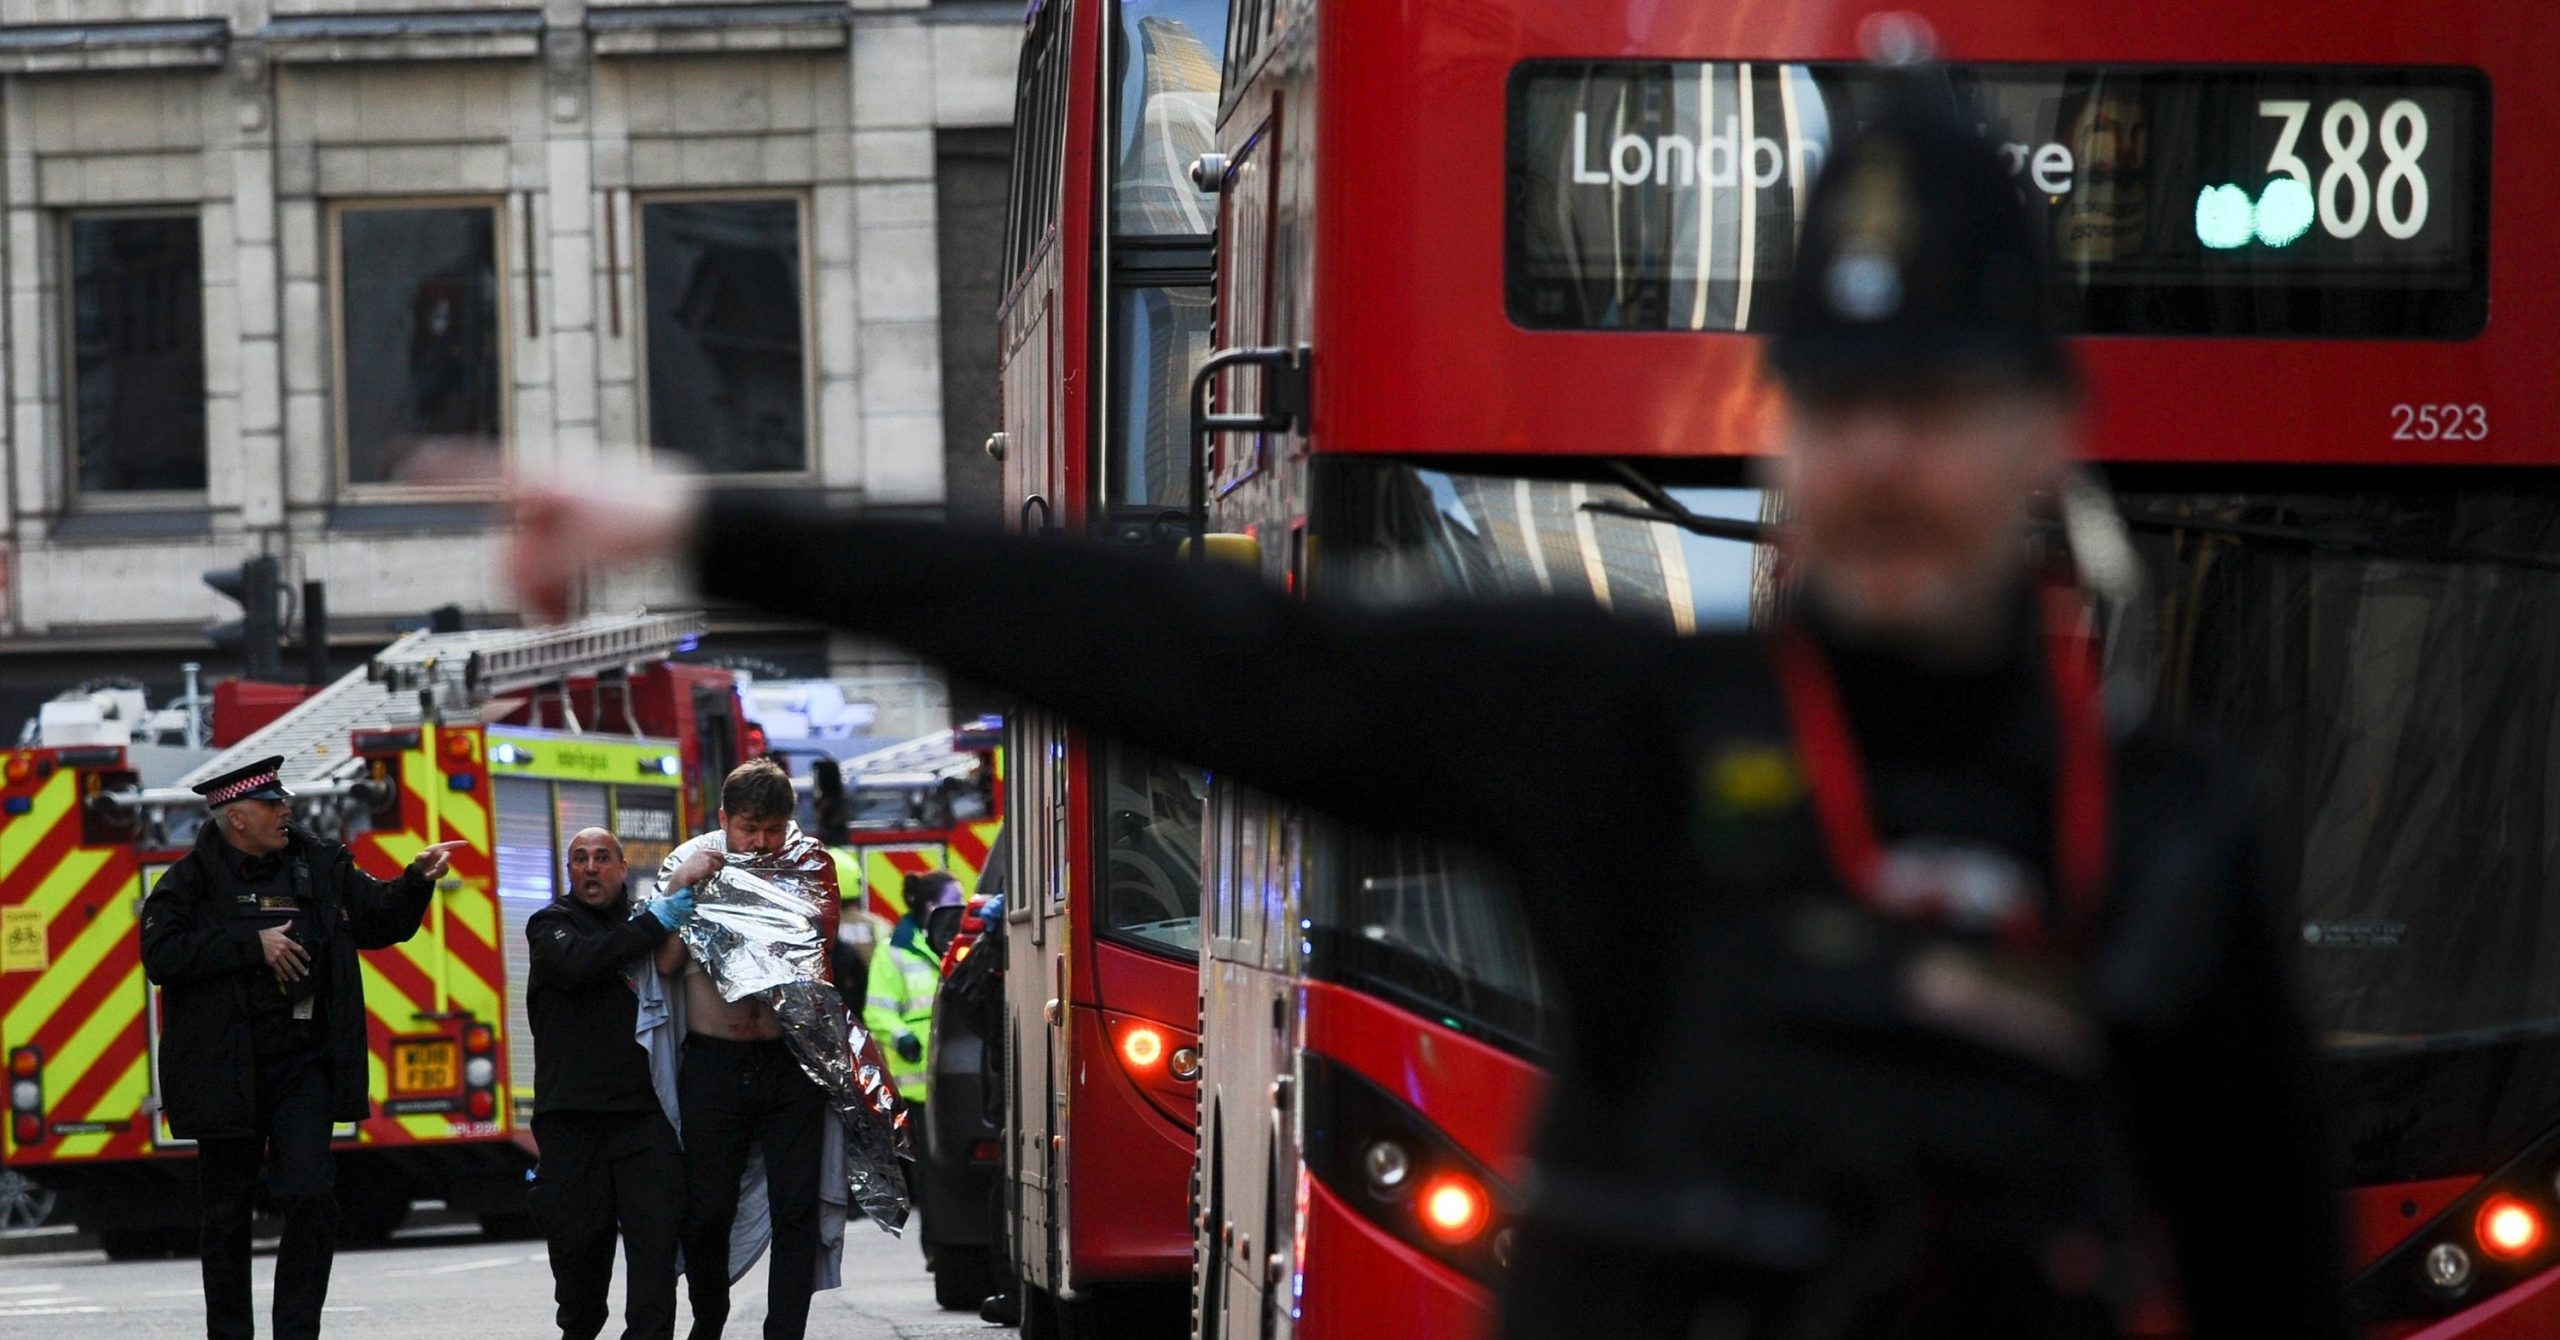 The London Bridge Attacker Was A Convicted Terrorist